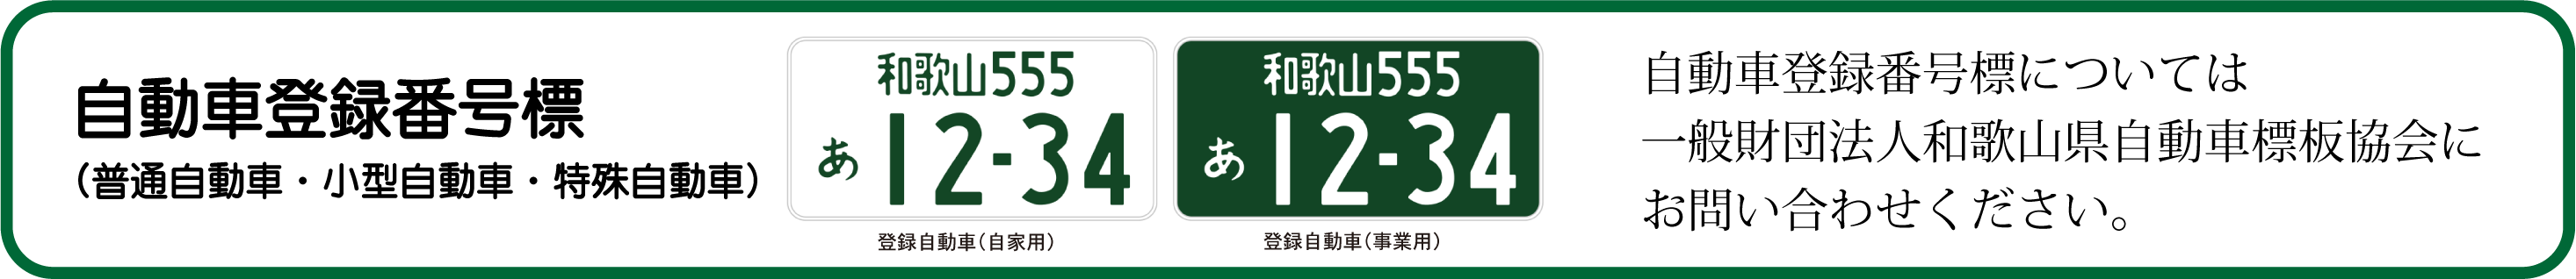 自動車登録番号標（普通自動車・小型自動車・特殊自動車）

一般財団法人和歌山県自動車標板協会